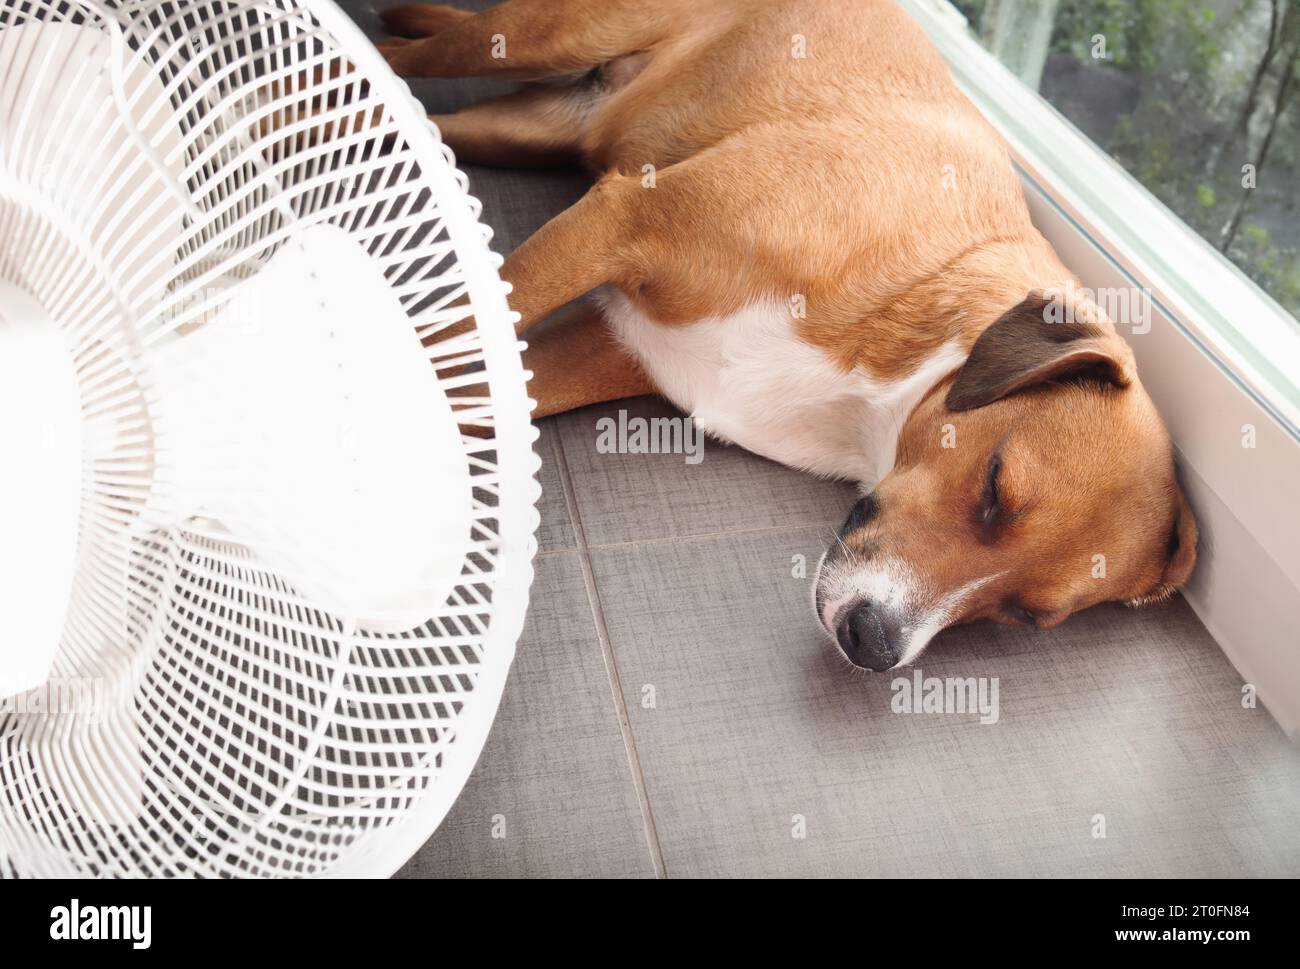 Cane sdraiato di fronte al ventilatore sul pavimento della cucina durante il caldo estivo. Un simpatico cucciolo allungato su piastrelle fredde. Tenere freschi gatti, cani e animali domestici in estate Foto Stock